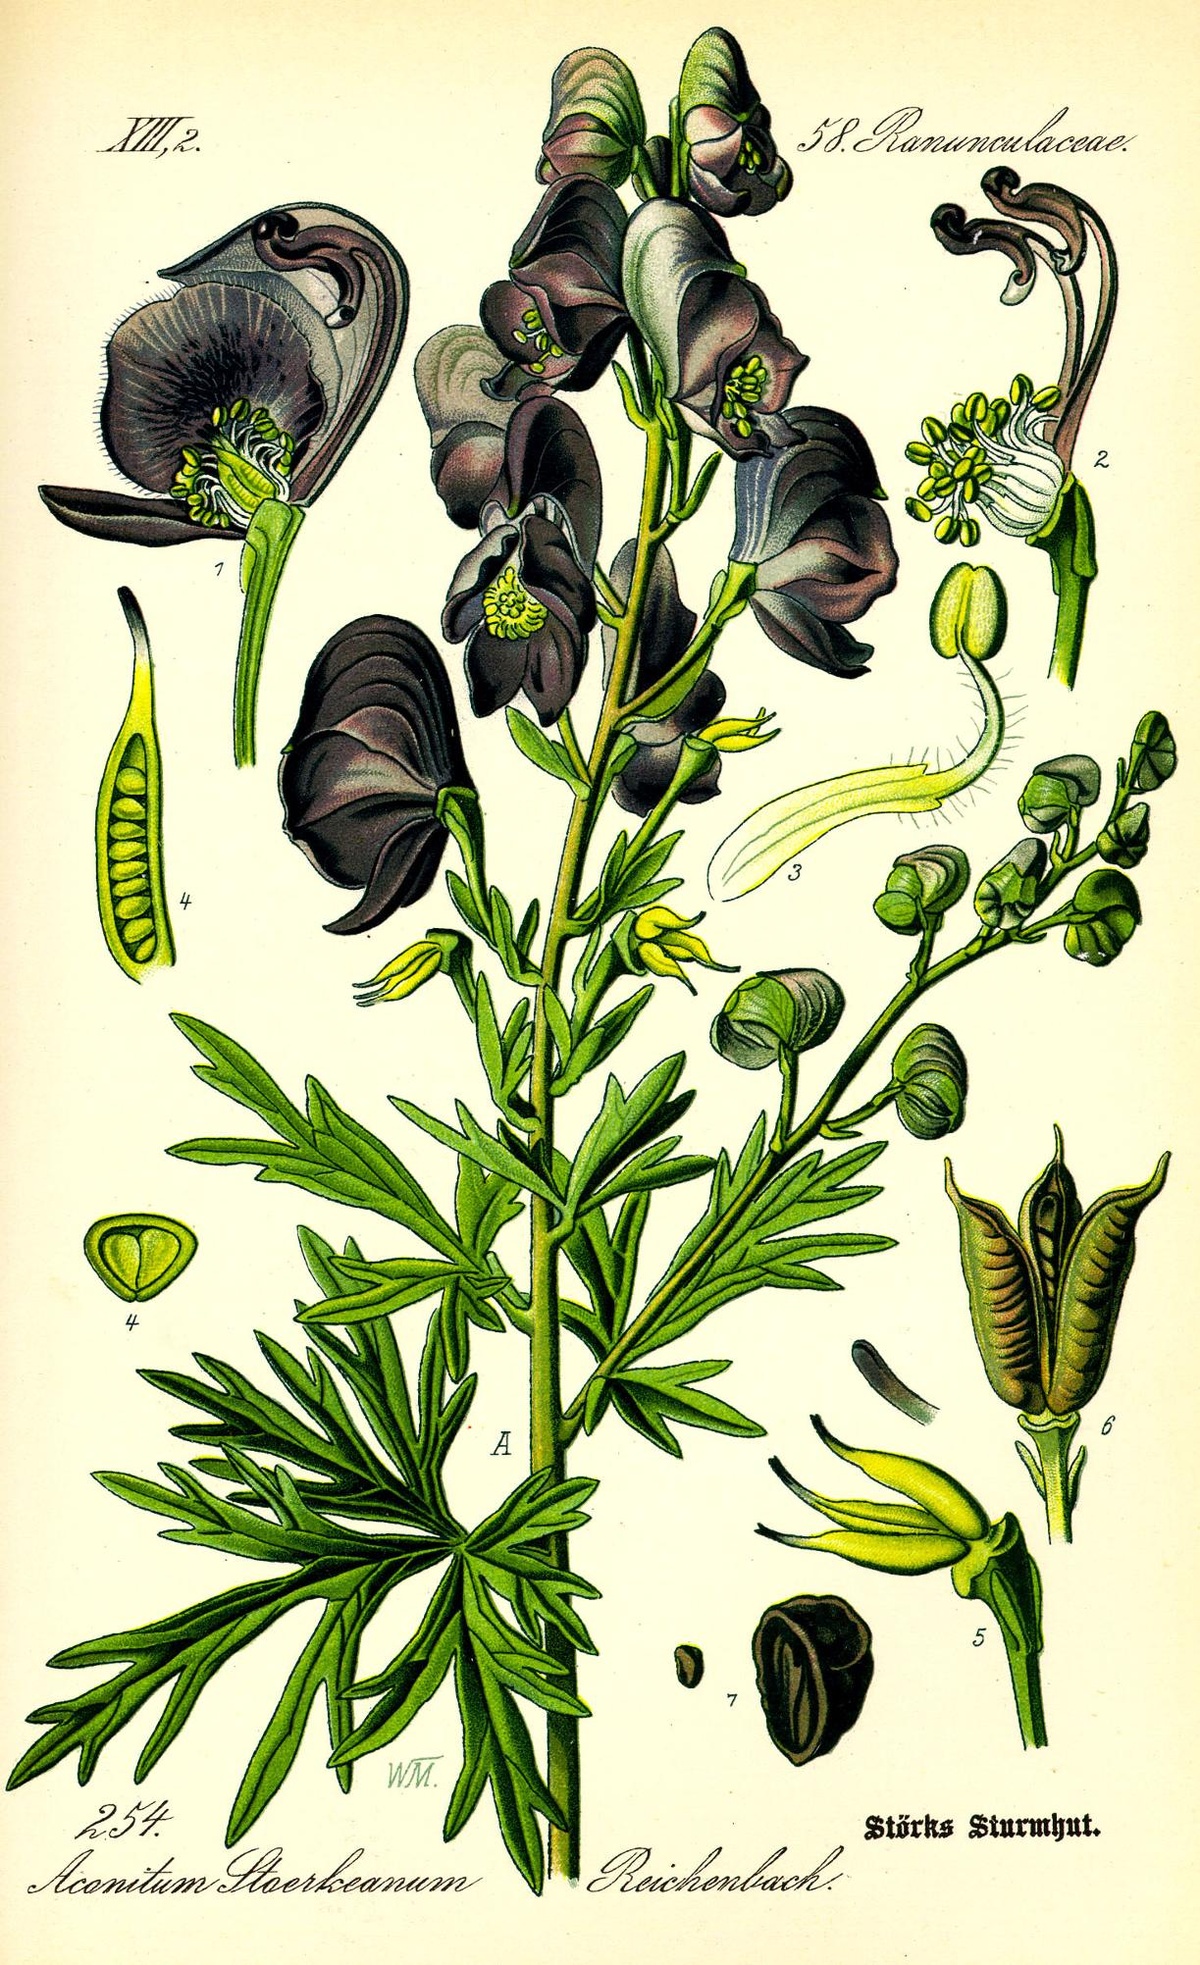 Zeichnung eines Blauen Eisenhuts samt Details von Samenkapseln und Blüten.  © WIkimedia